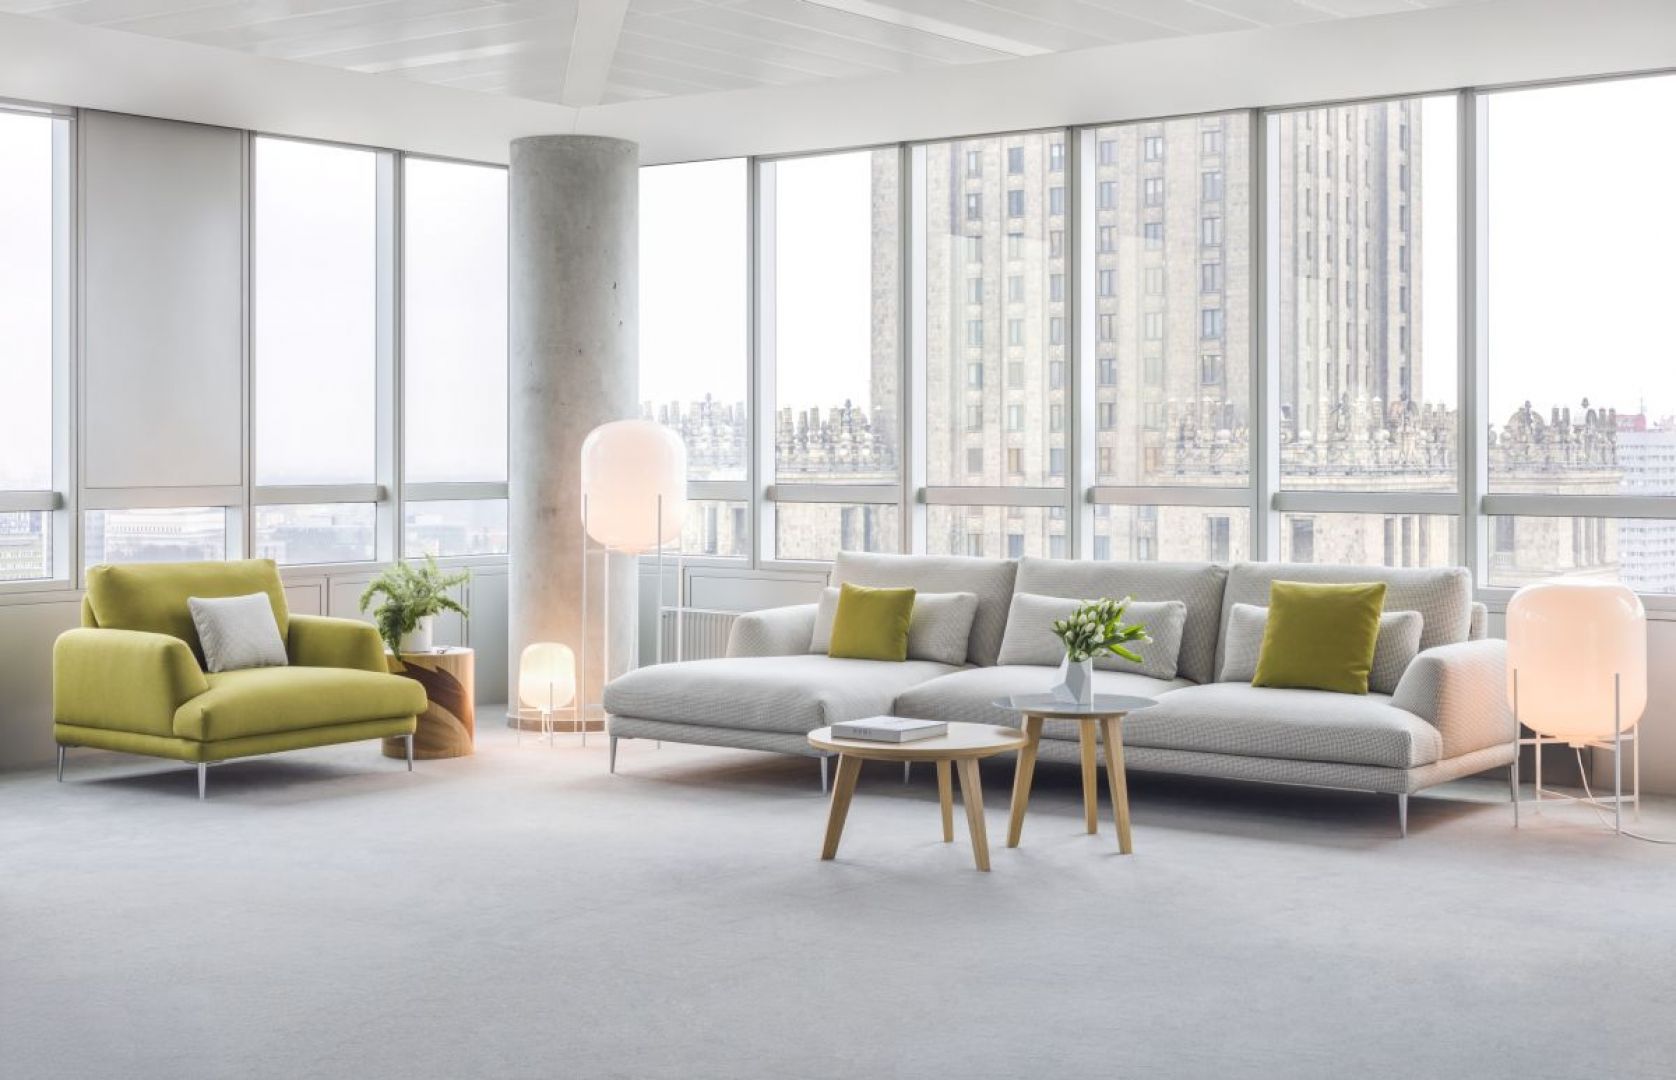 Sofa Classic odwołuje się do pojęcia aranżacyjnej klasyki poprzez dostojne, szlachetne kształty i ponadczasową, lekką sylwetkę. Fot. Comforty